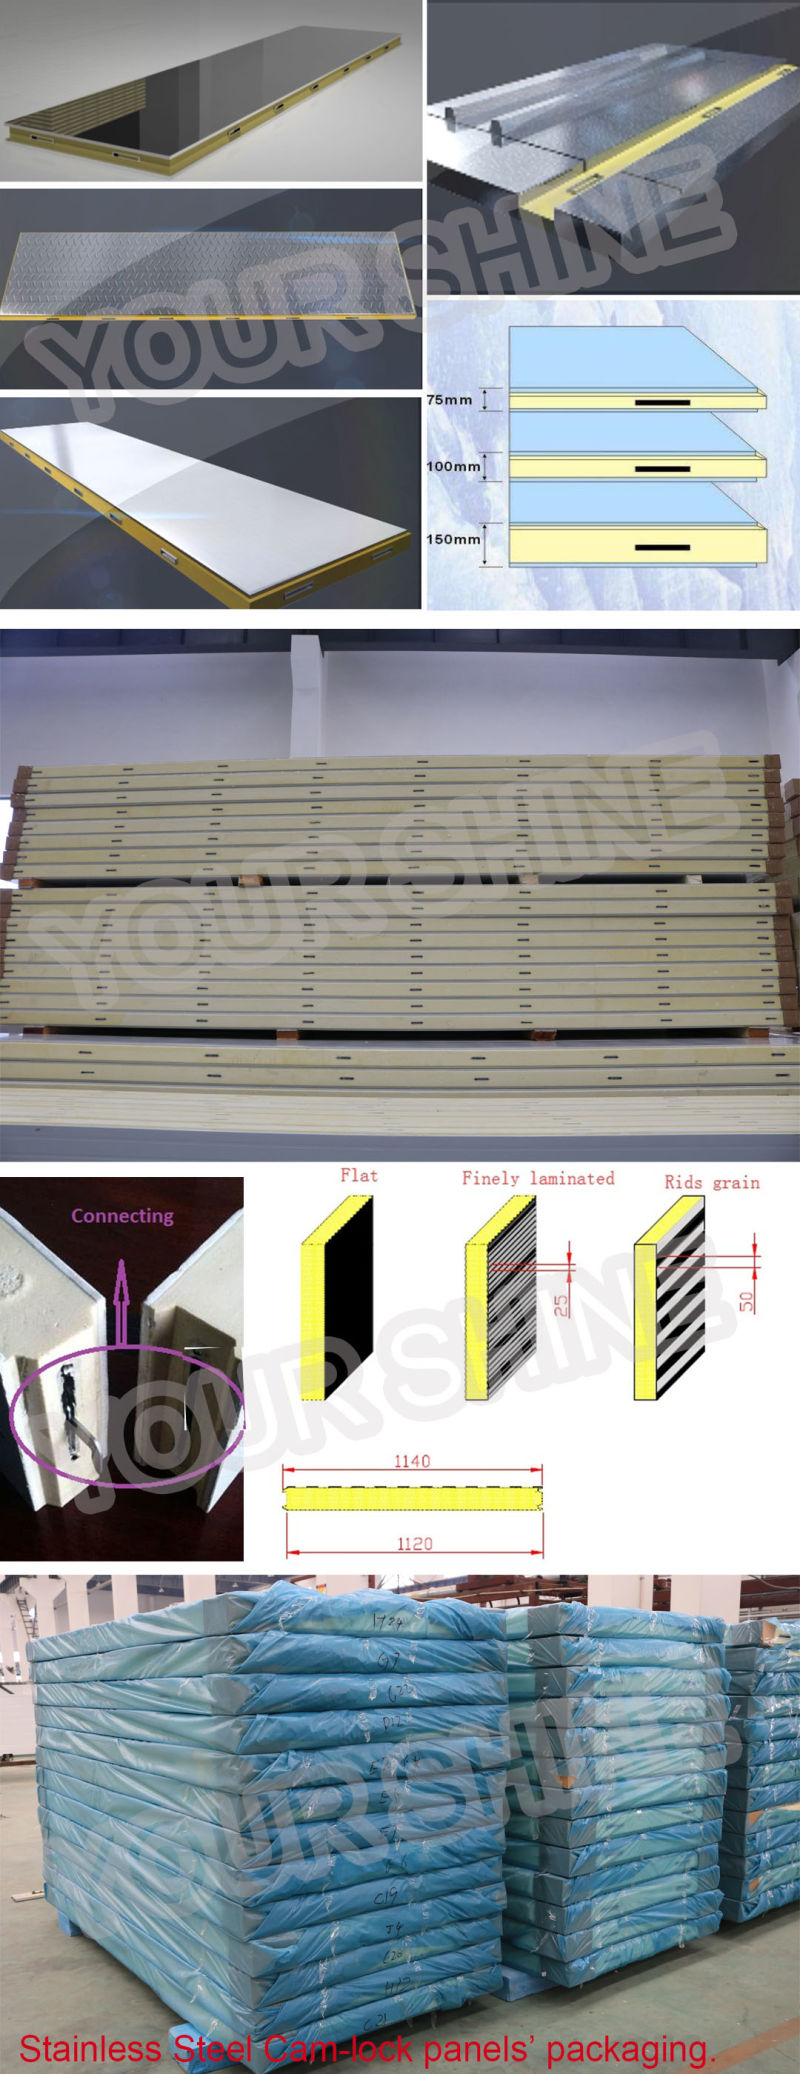 50mm Polyurethane Insulation Board/Rigid Polyurethane Foam Board Insulation/PU Sandwich Panel